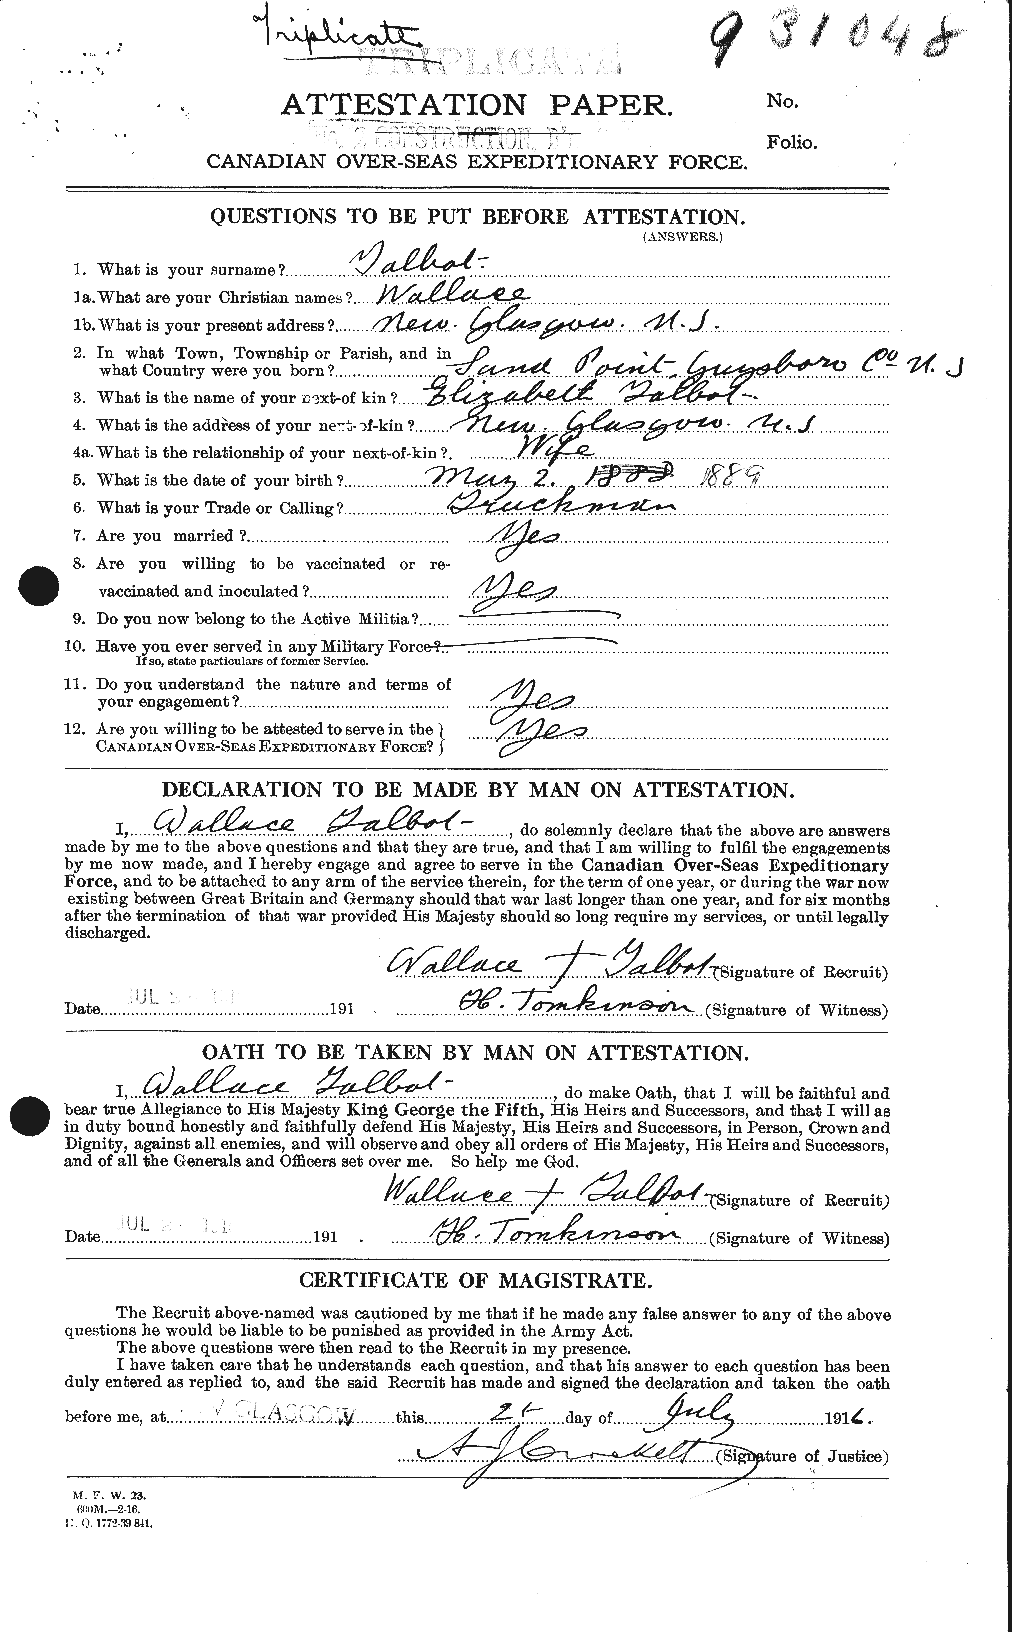 Dossiers du Personnel de la Première Guerre mondiale - CEC 624908a